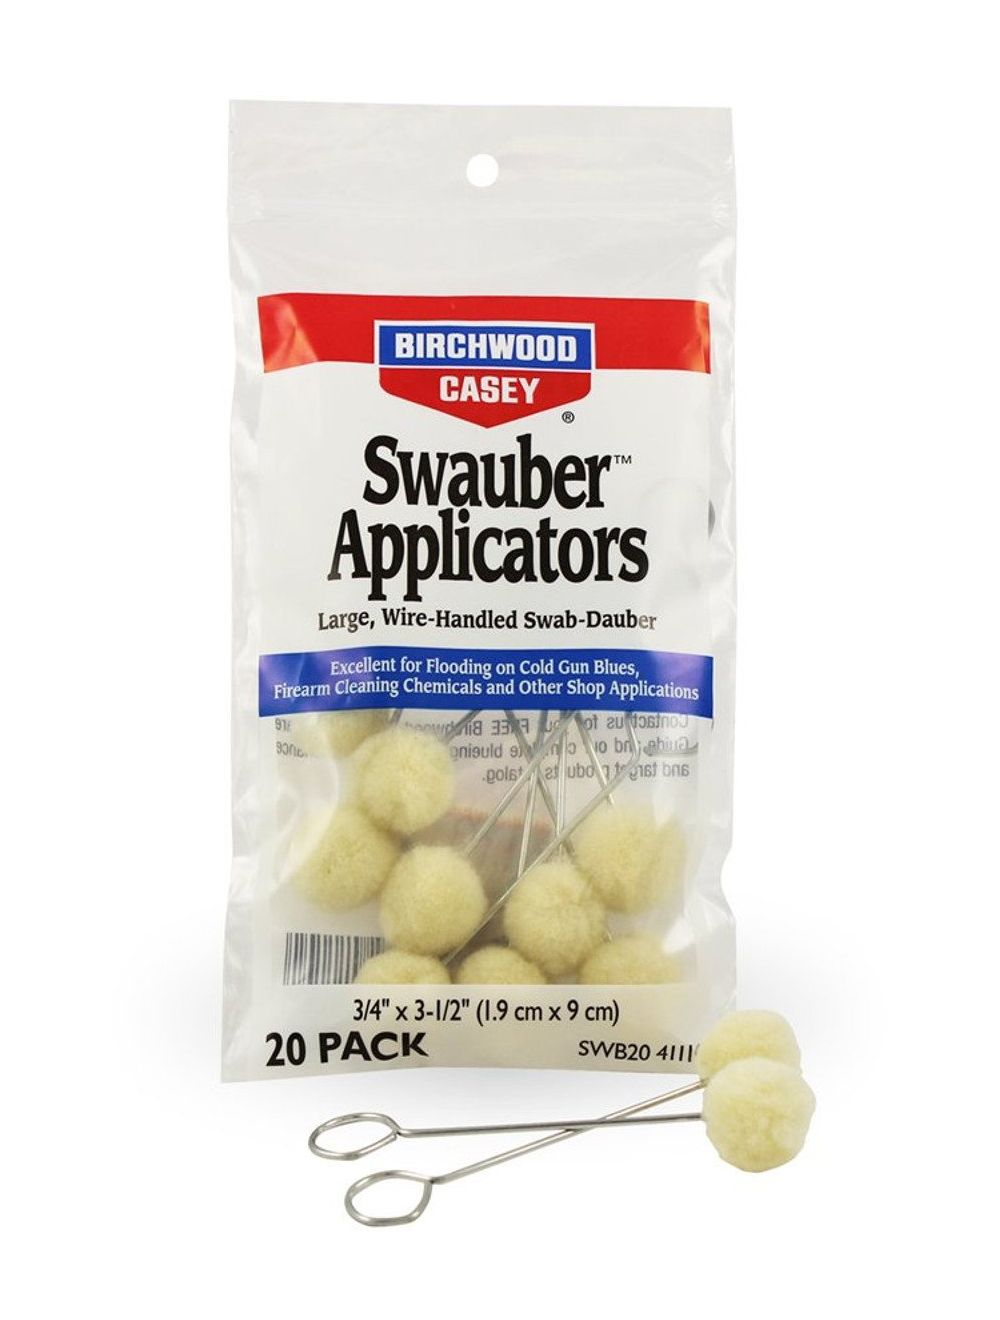 Swauber Applicators, 20 pack